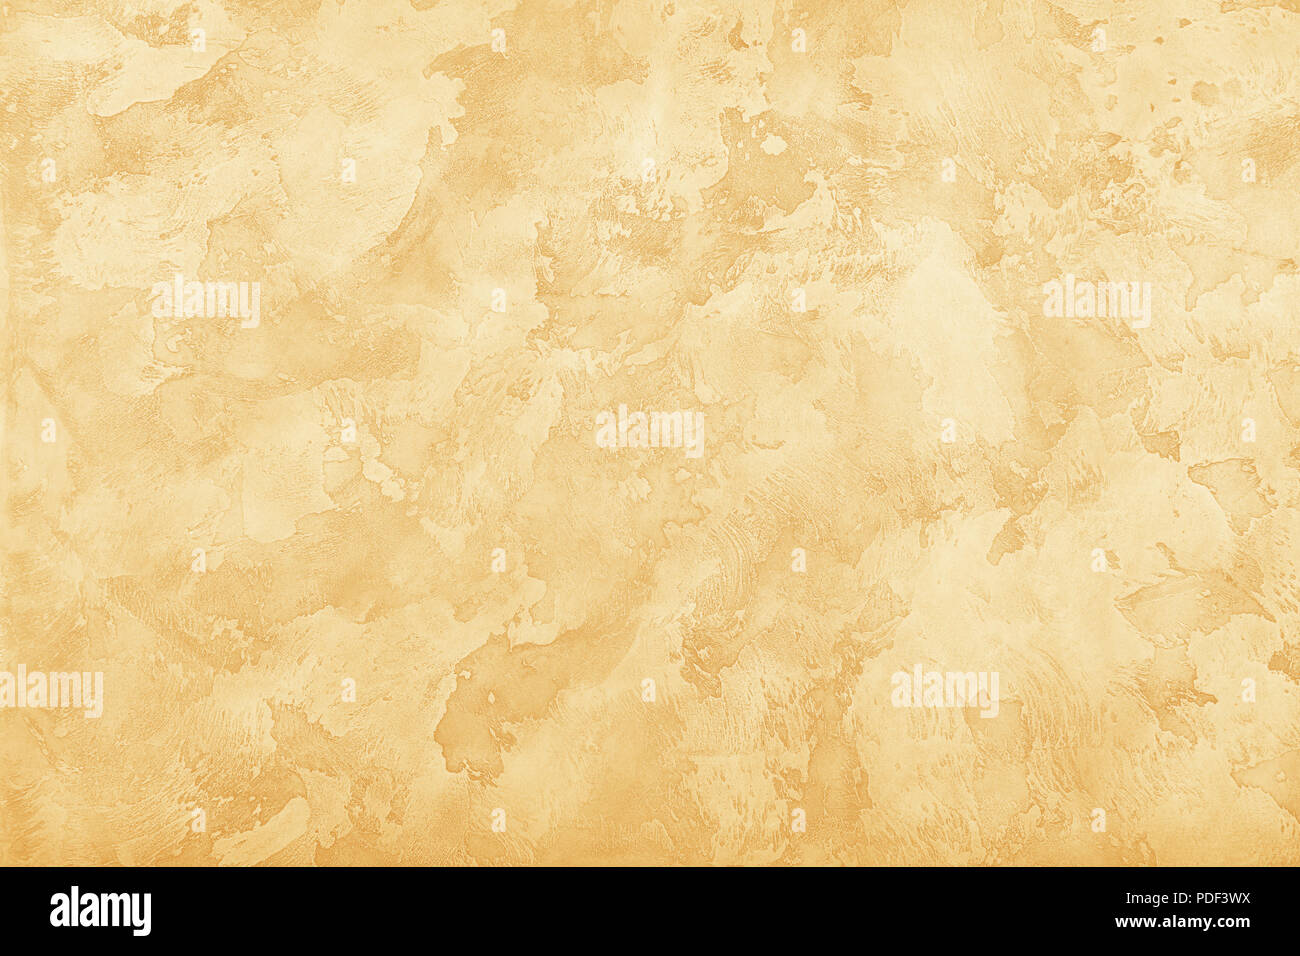 Grunge marron et beige pastel vieux inégale de daub mur de plâtre texture background de taches et de traits de peinture, Close up Banque D'Images